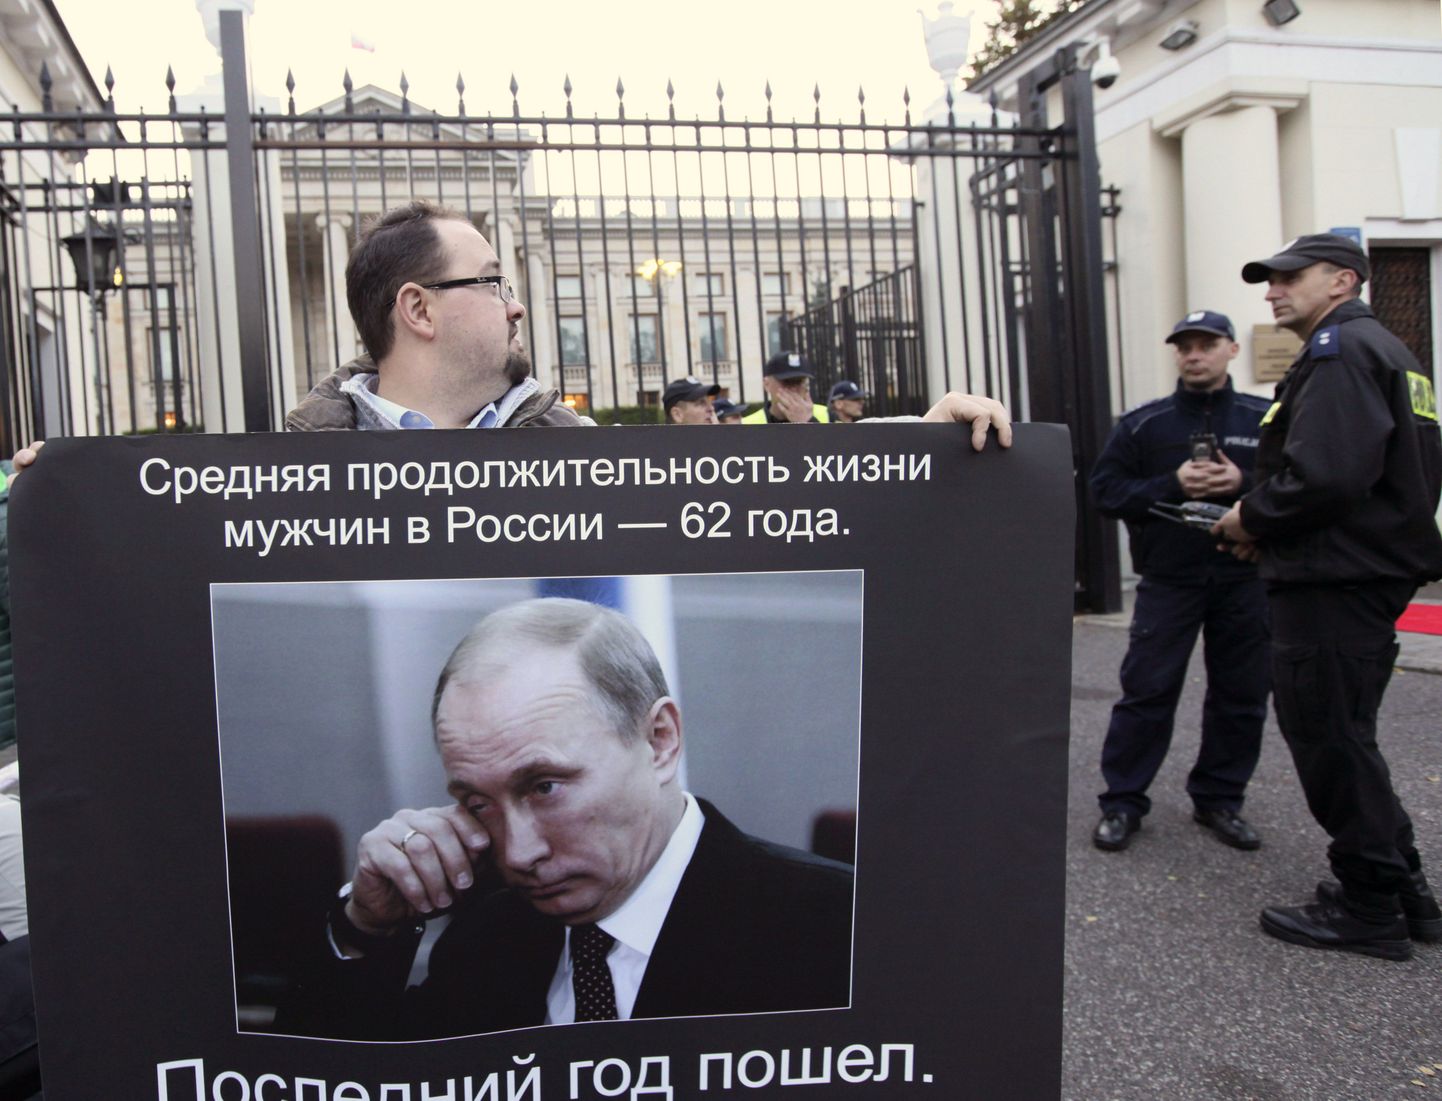 «Vene mehe keskmine eluiga – 62 aastat. Viimane läks,» teatas meeleavaldaja Vene saatkonna ees Varssavis teisipäeval, kui Vladimir Putin tähistas 62. sünnipäeva.